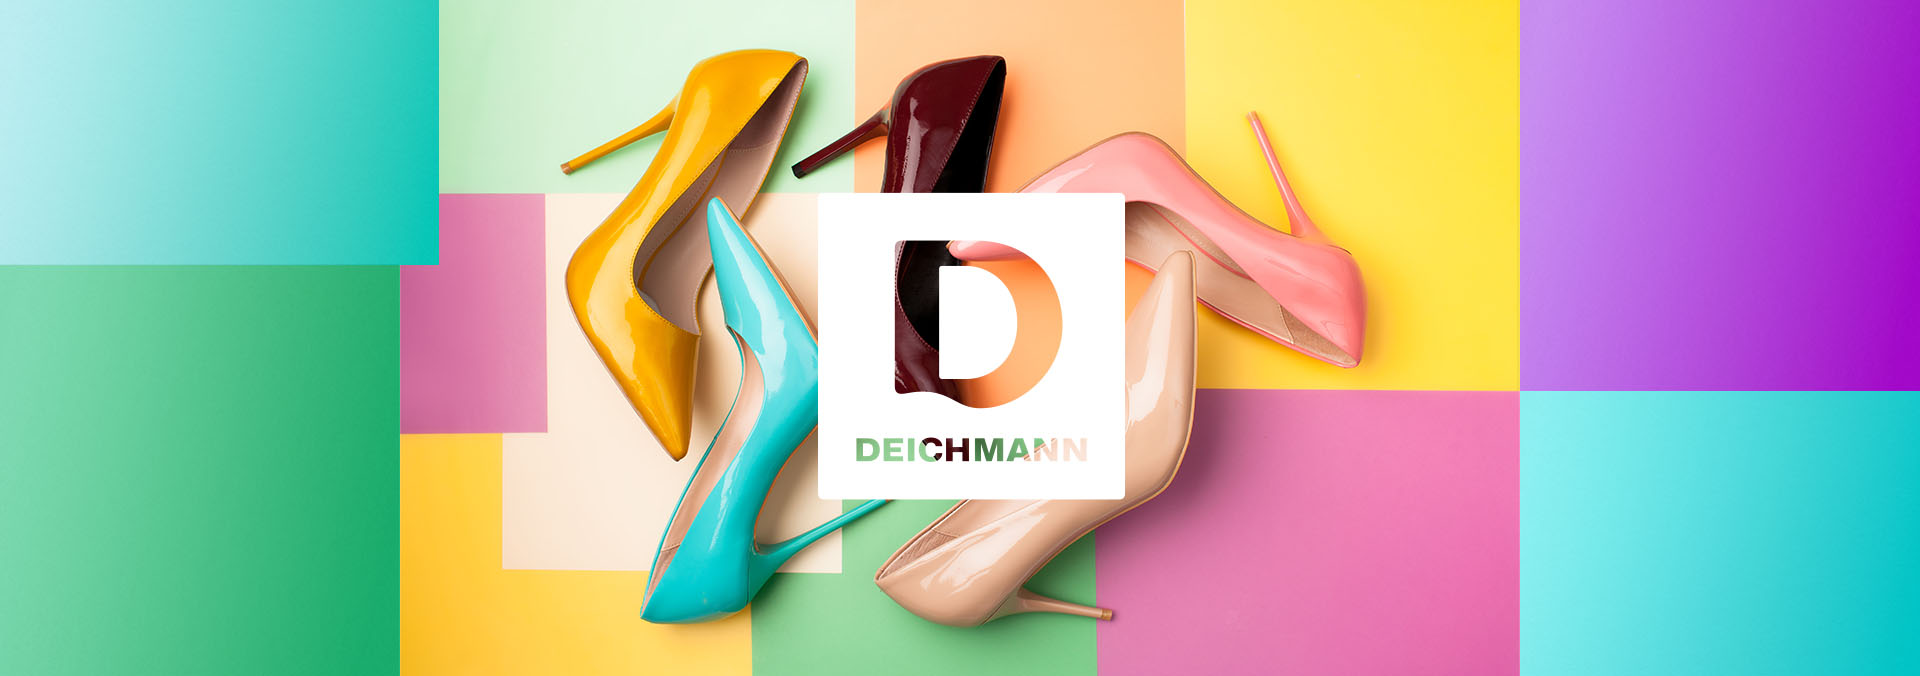 HR Marketing für Deichmann Karriere